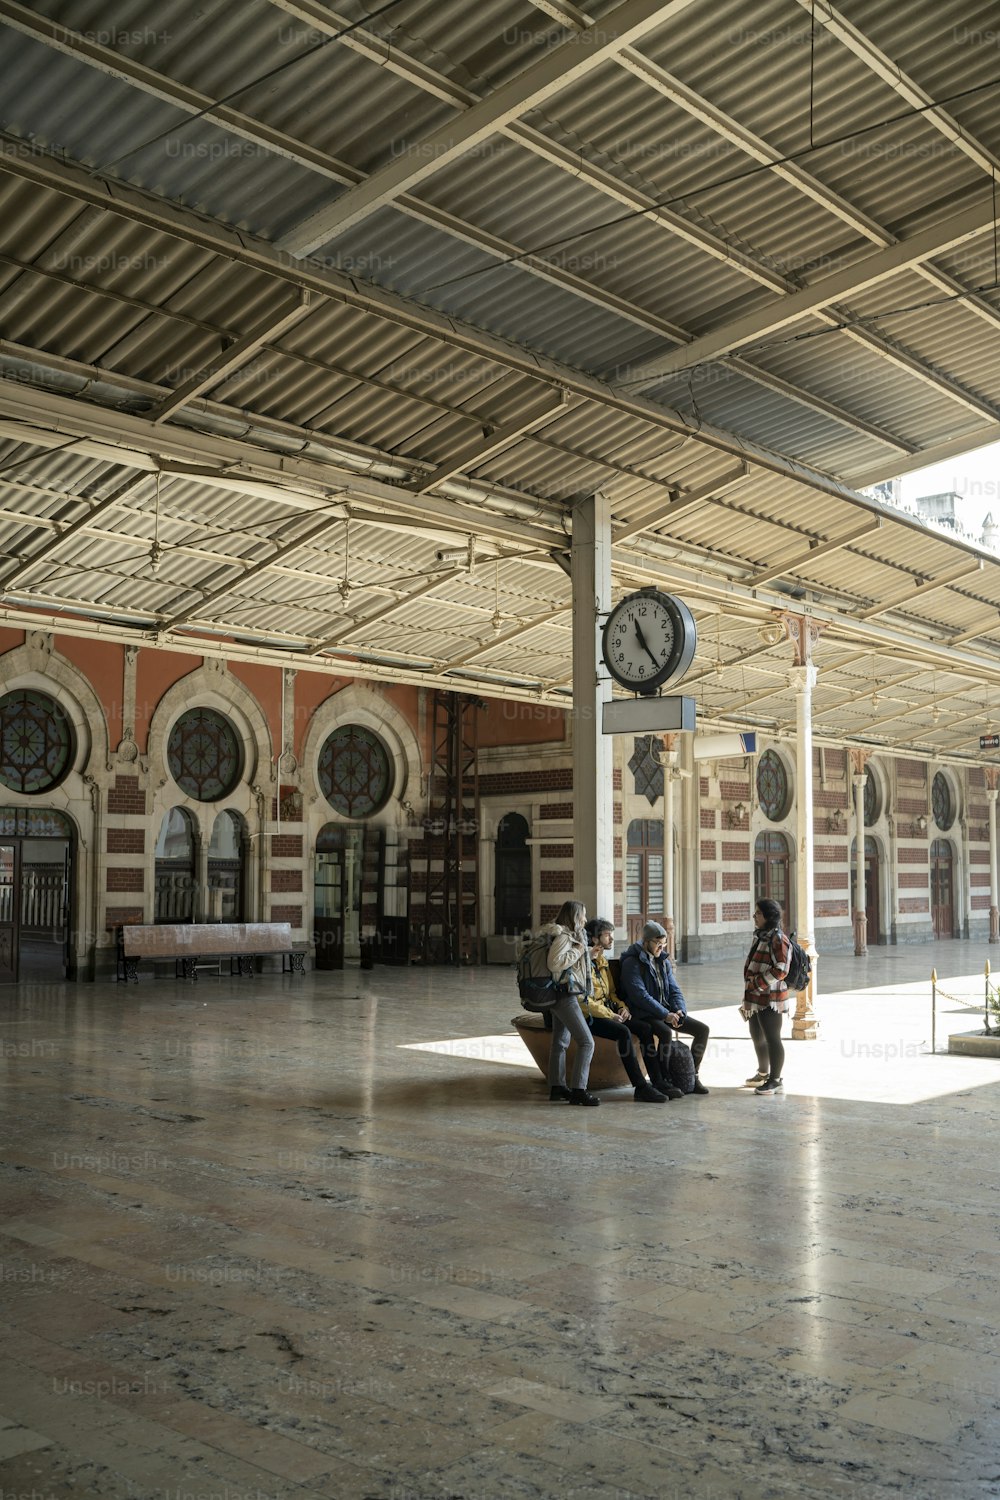 Un gruppo di persone sedute su una panchina in una stazione ferroviaria